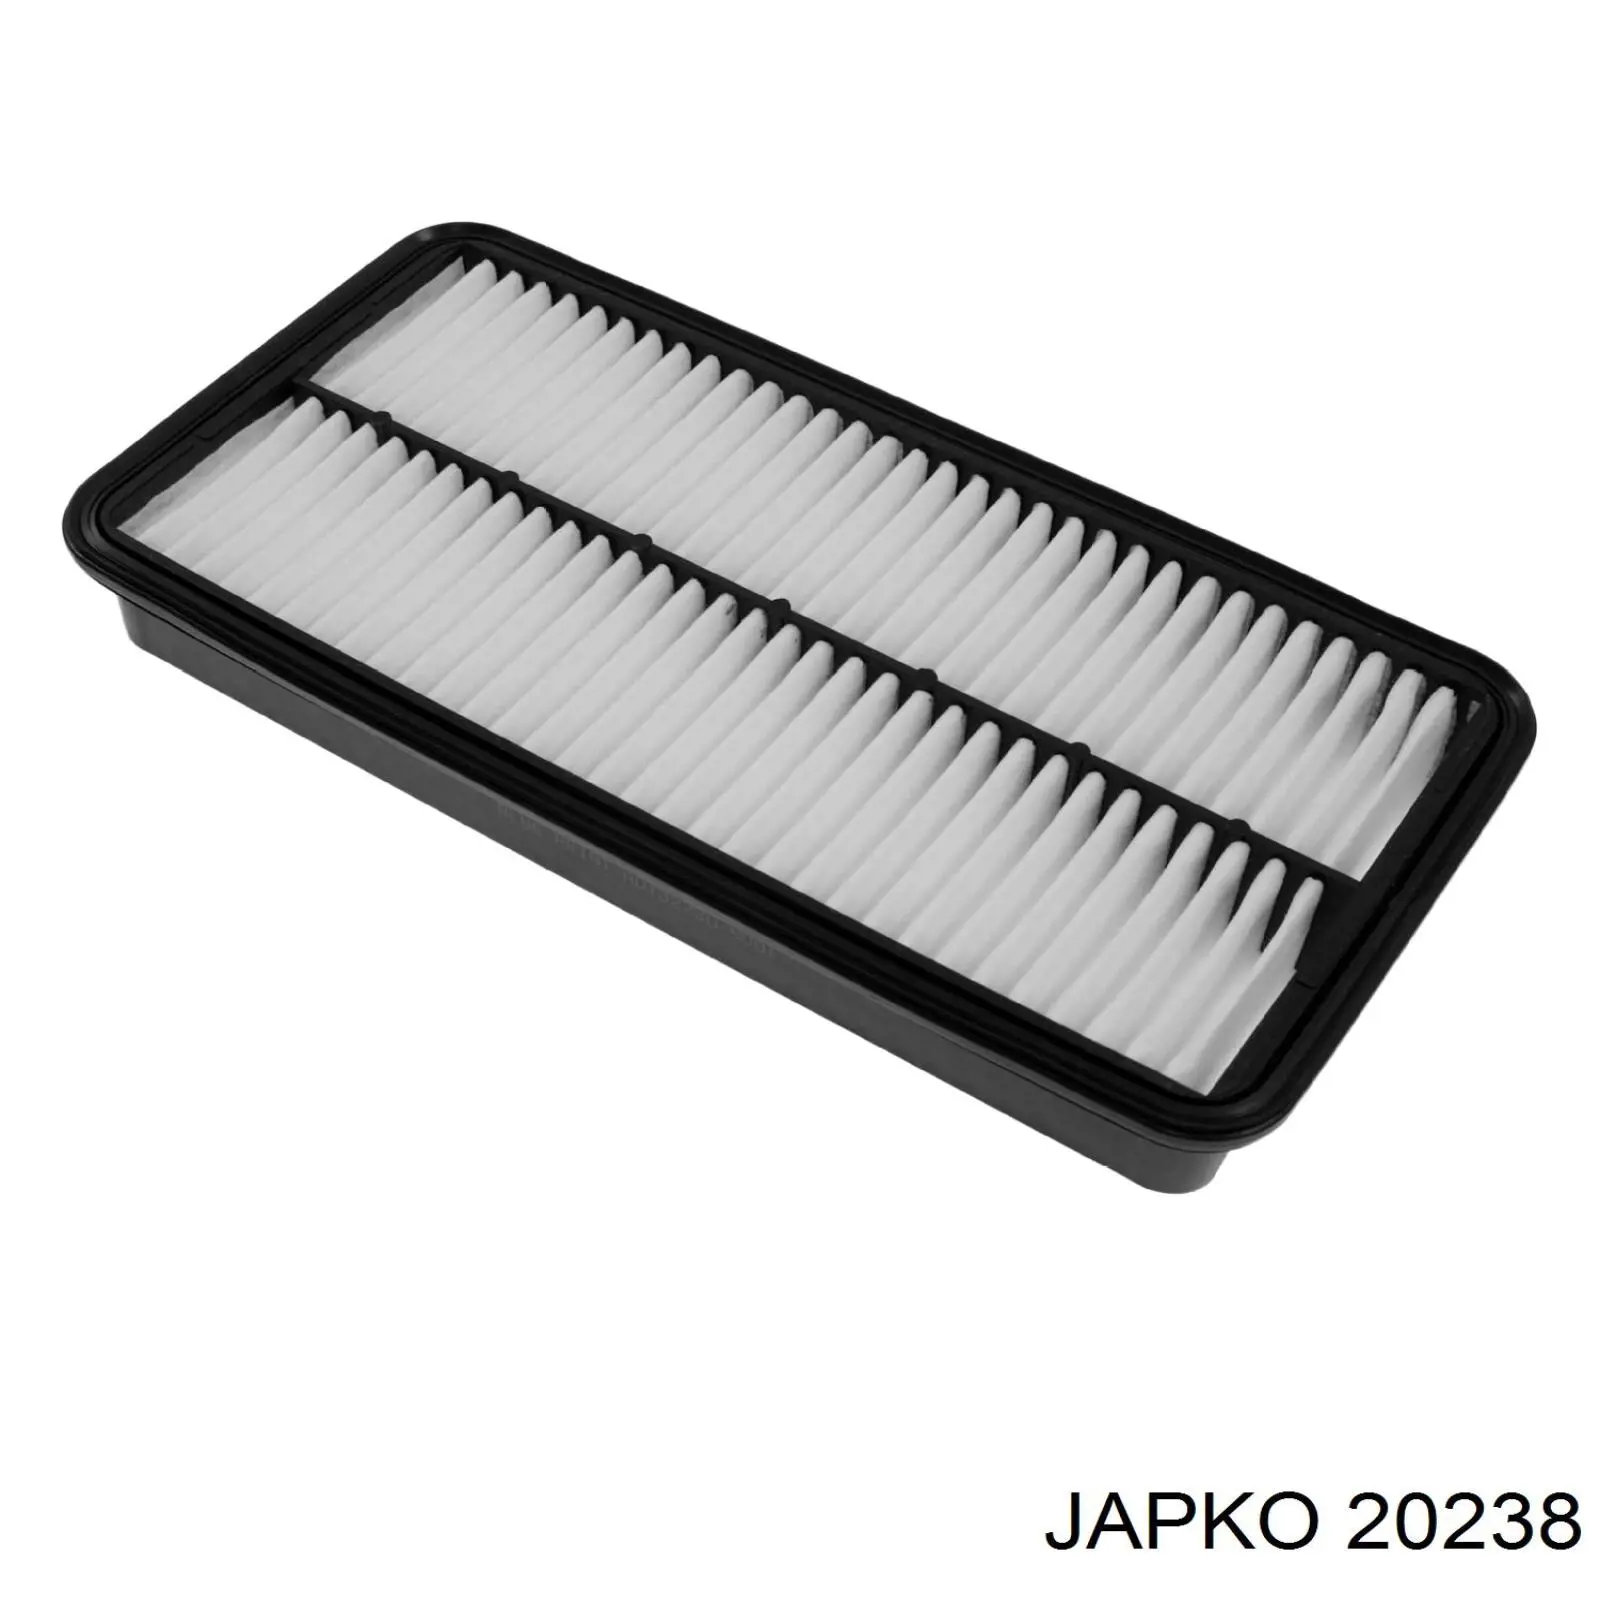 20238 Japko filtro de aire